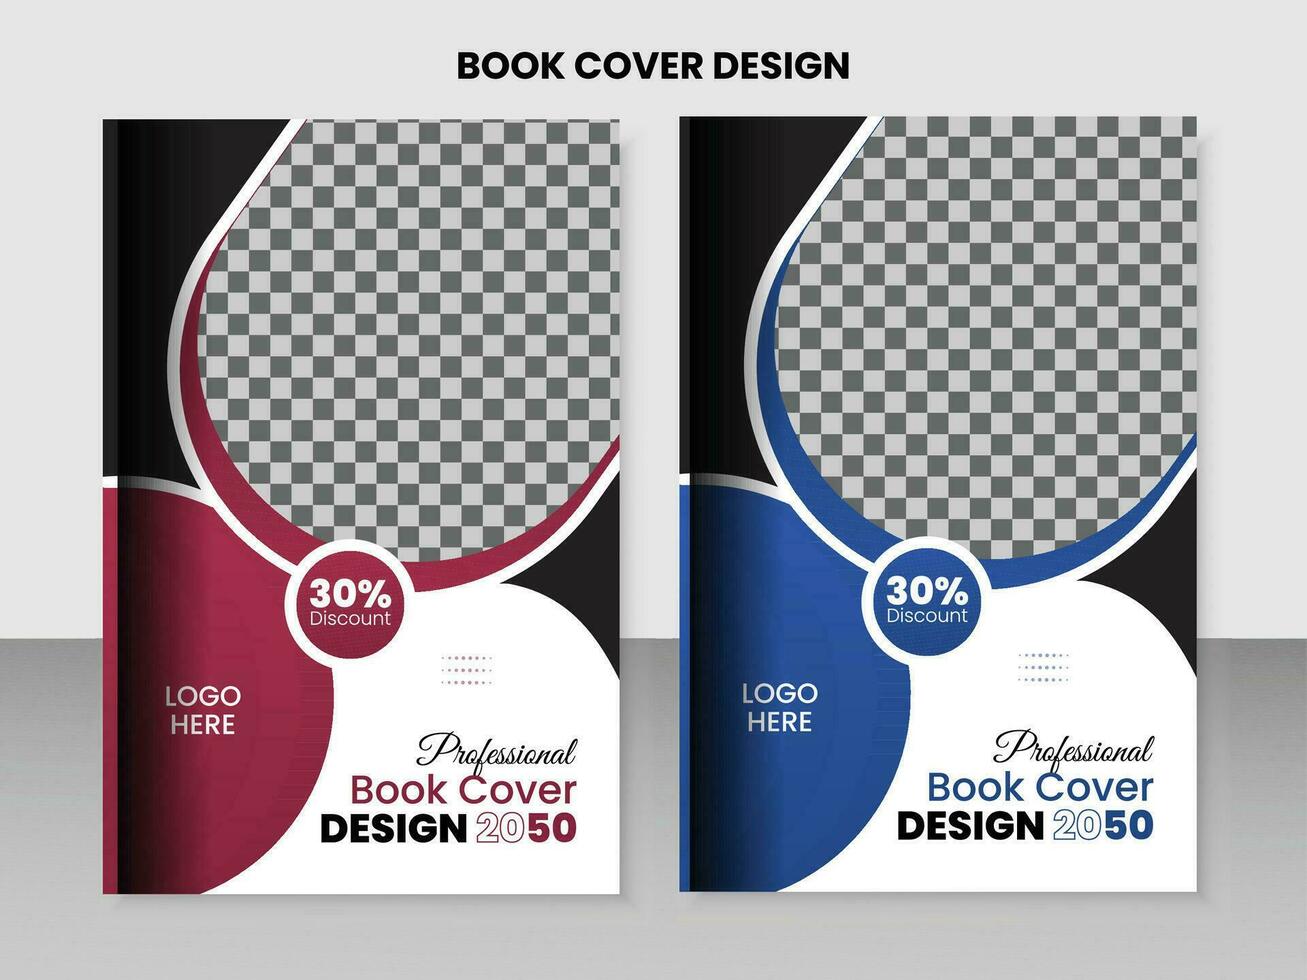 zakelijke en professioneel boek Hoes sjabloon ontwerp. vector